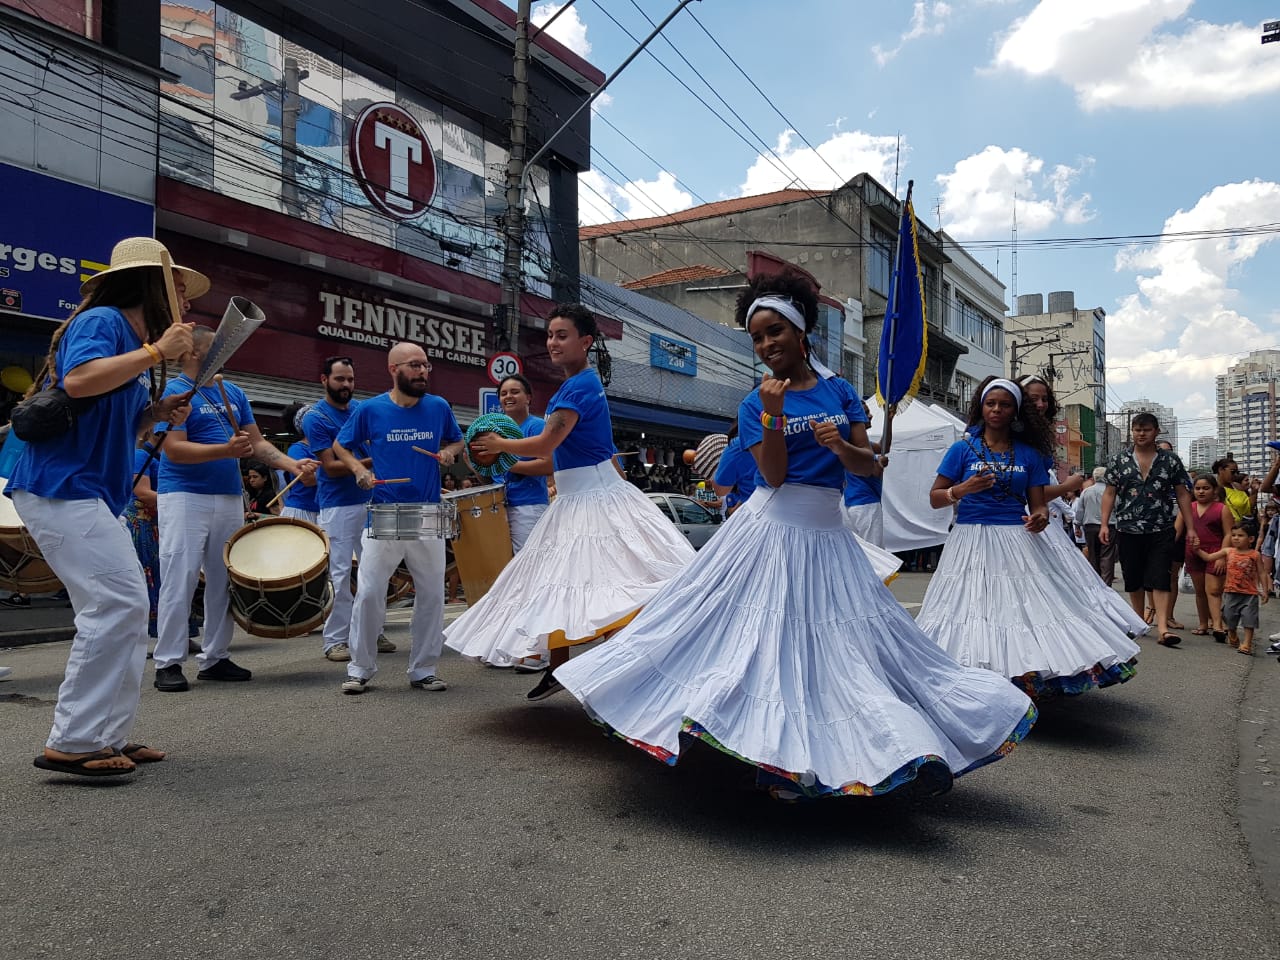 Grupo Maracatu na 12 de outubro dançarinos vestidos de branco e azul, mulheres com longos vestidos e homens com caça, camiseta e chapéu